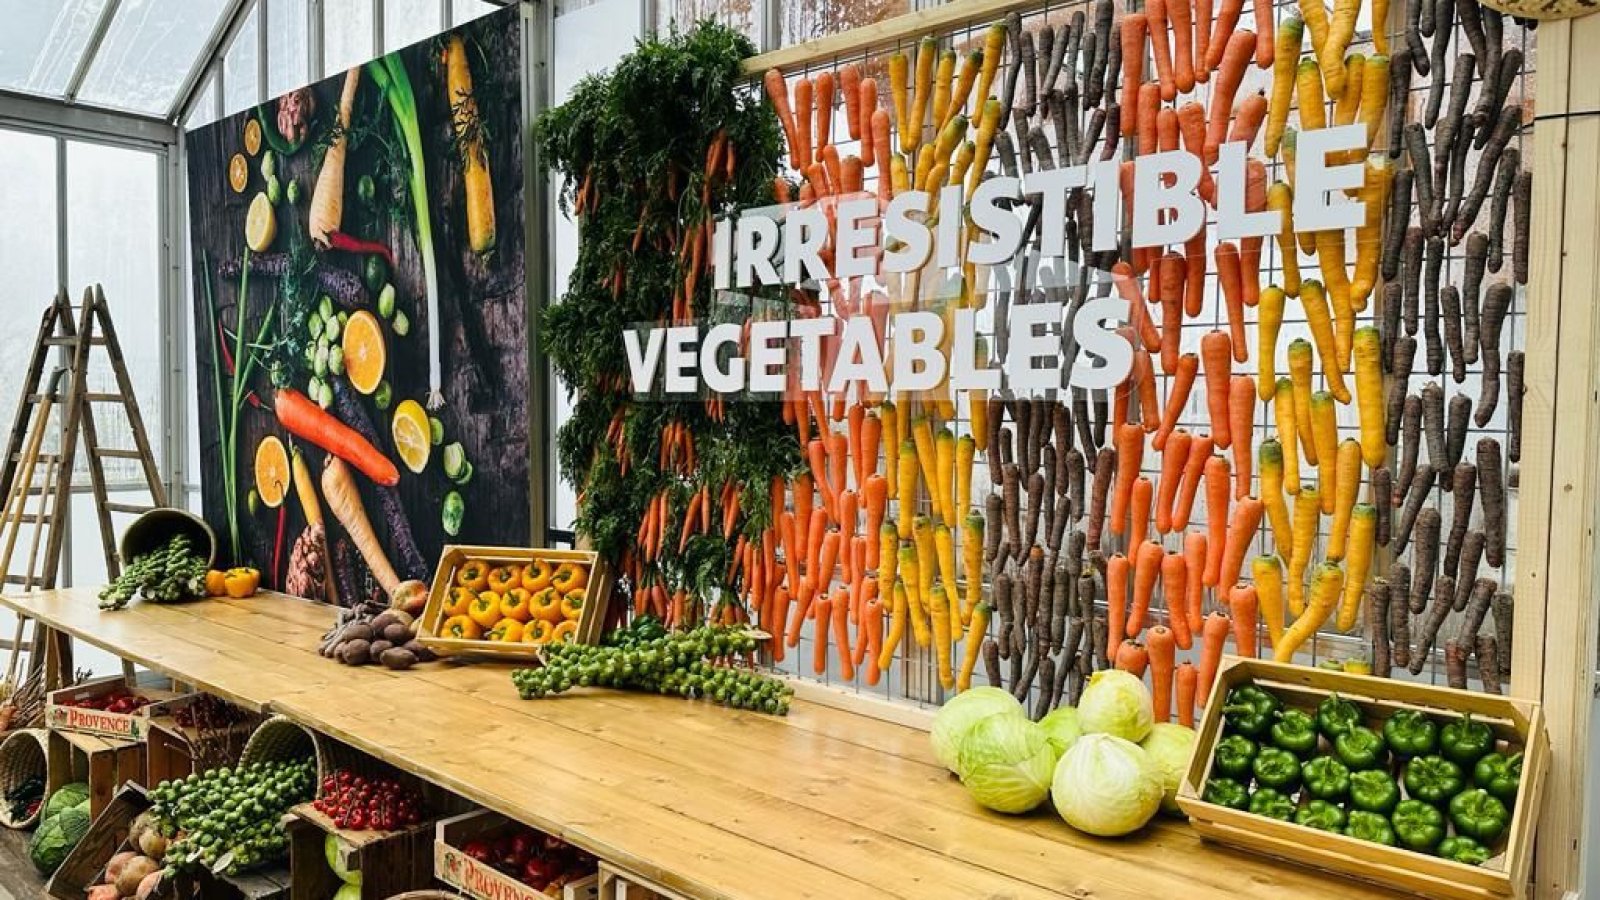 Irresistible vegetables